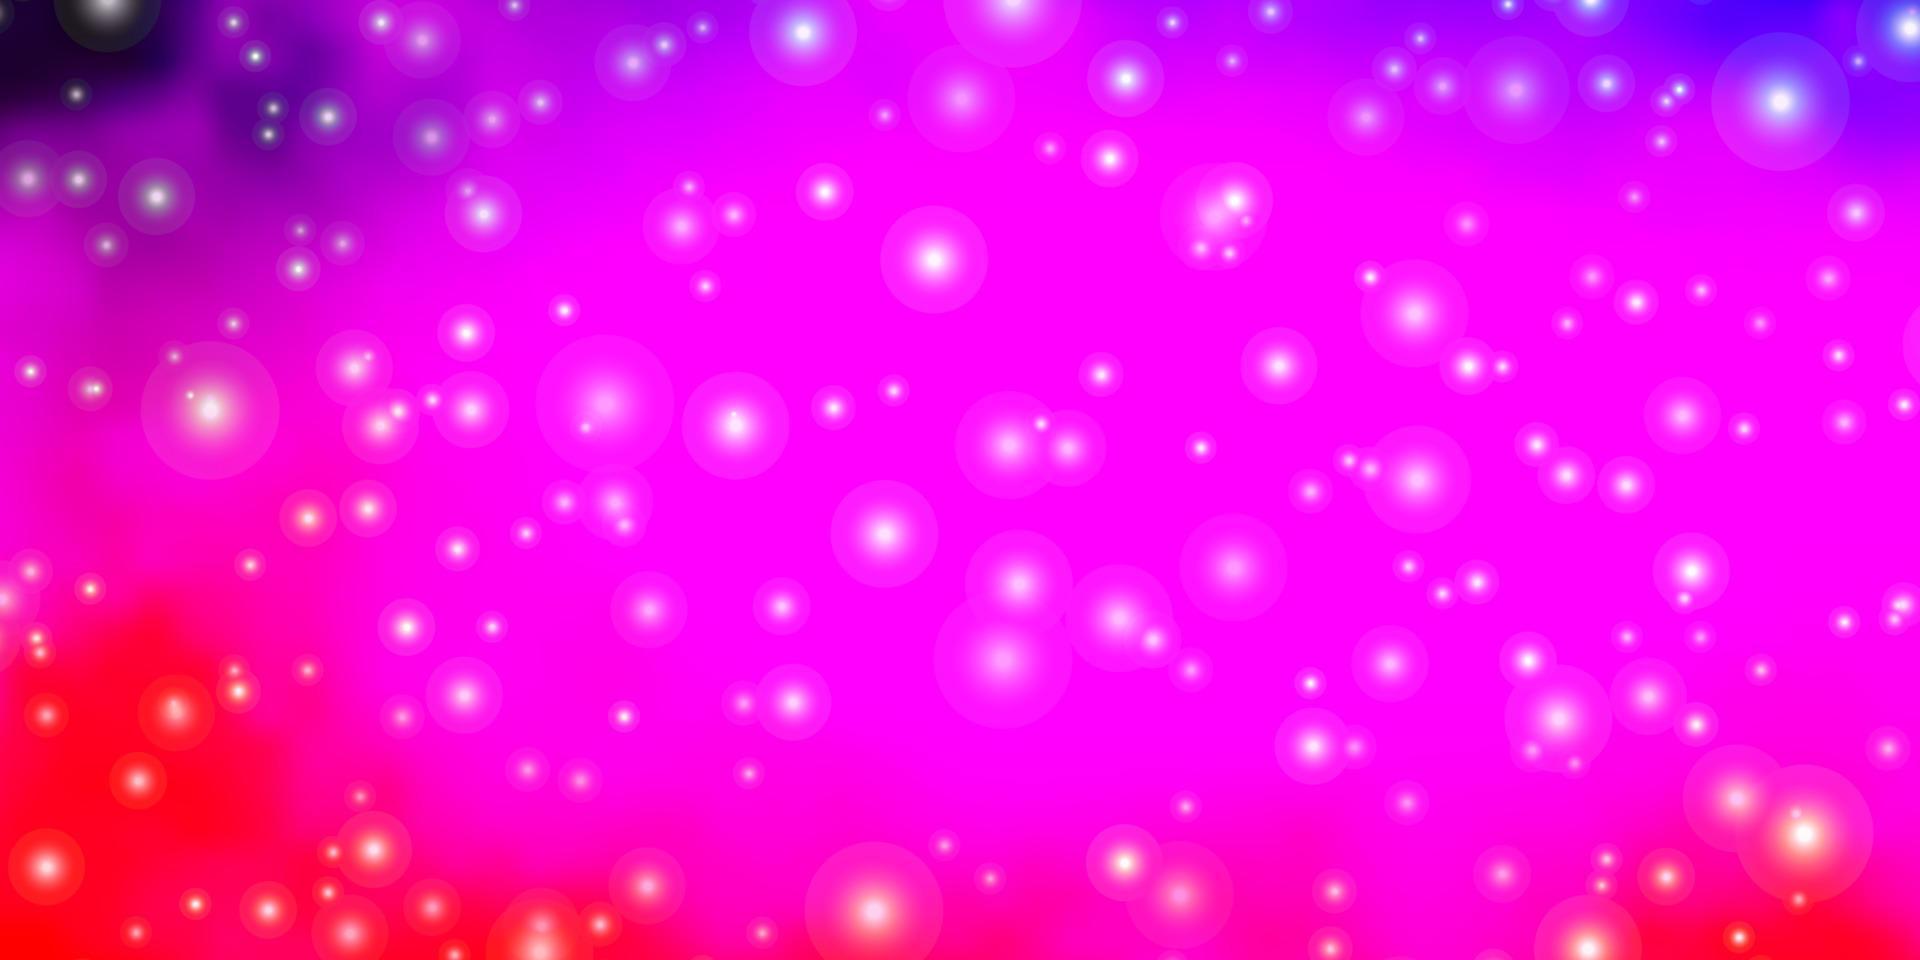 ljuslila, rosa vektorstruktur med vackra stjärnor. vektor